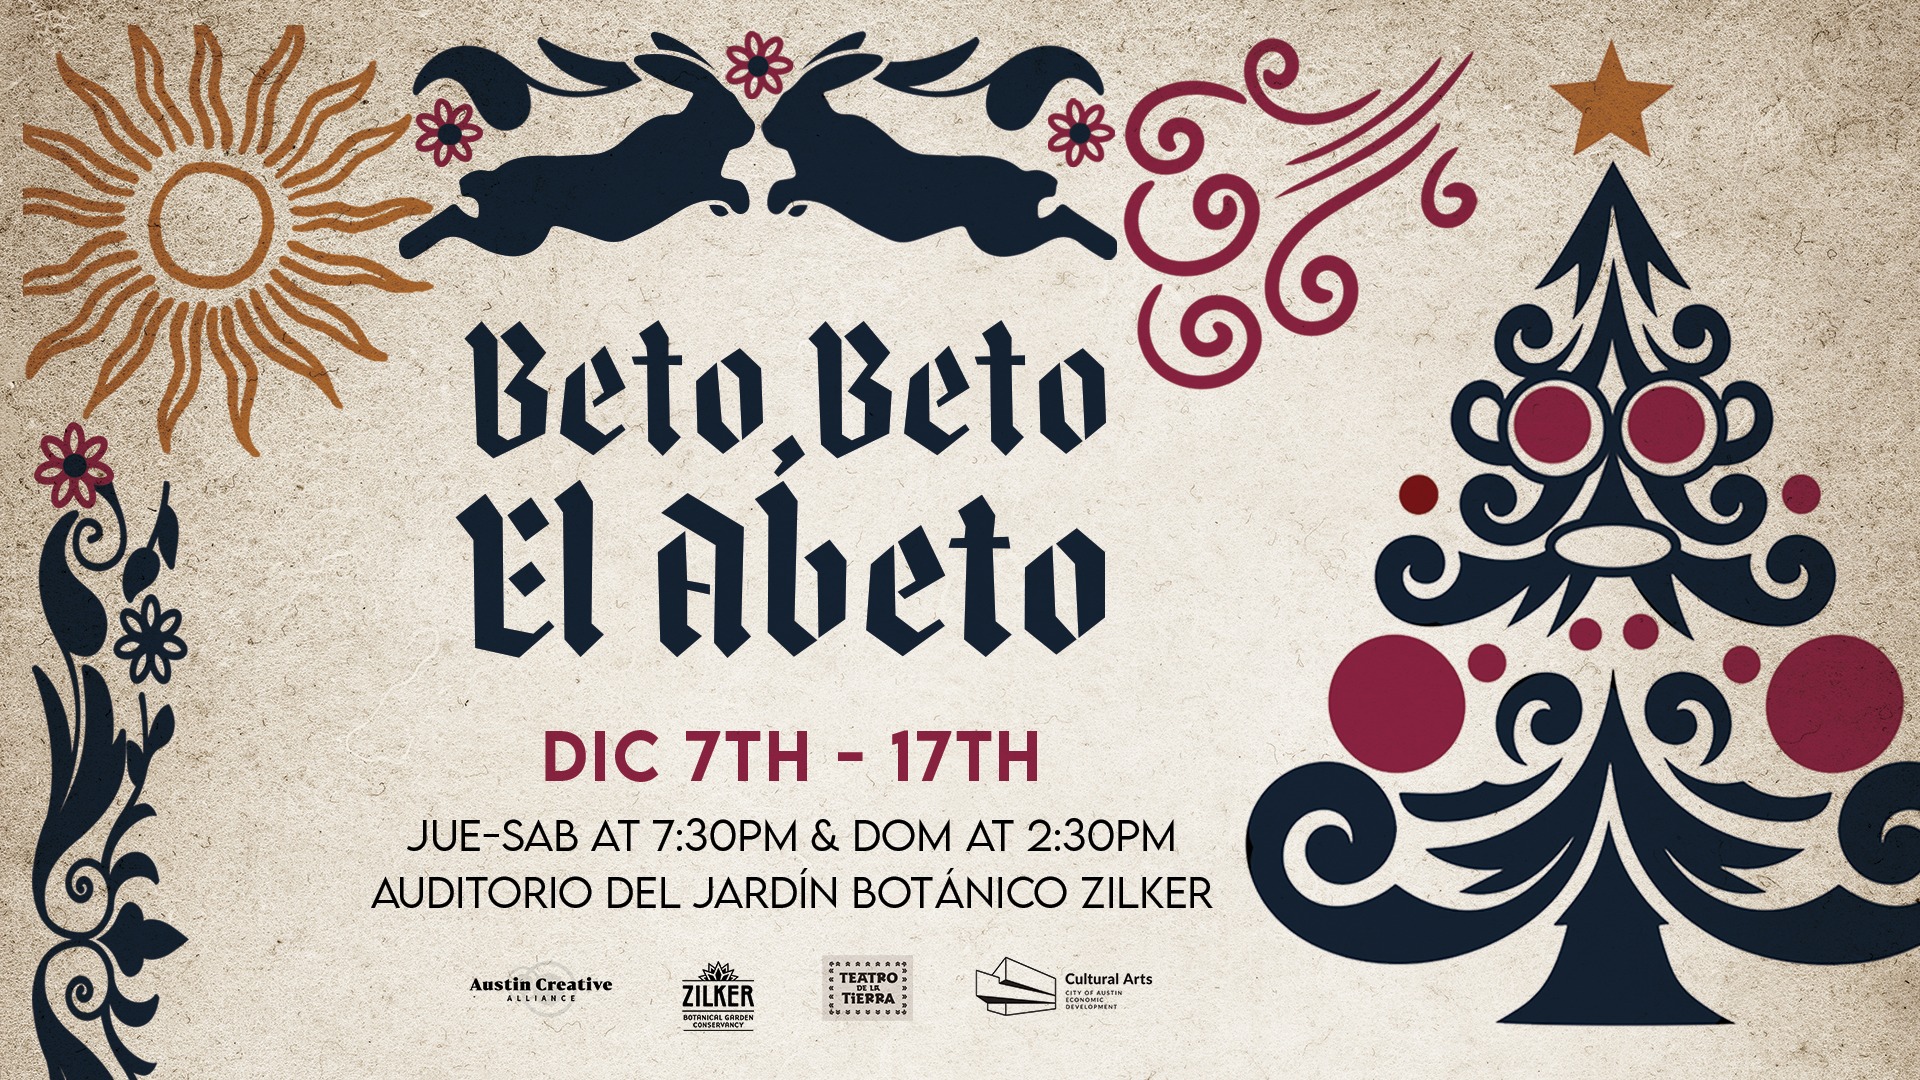 Betoo, Beto, el Abeto by Teatro de la Tierra